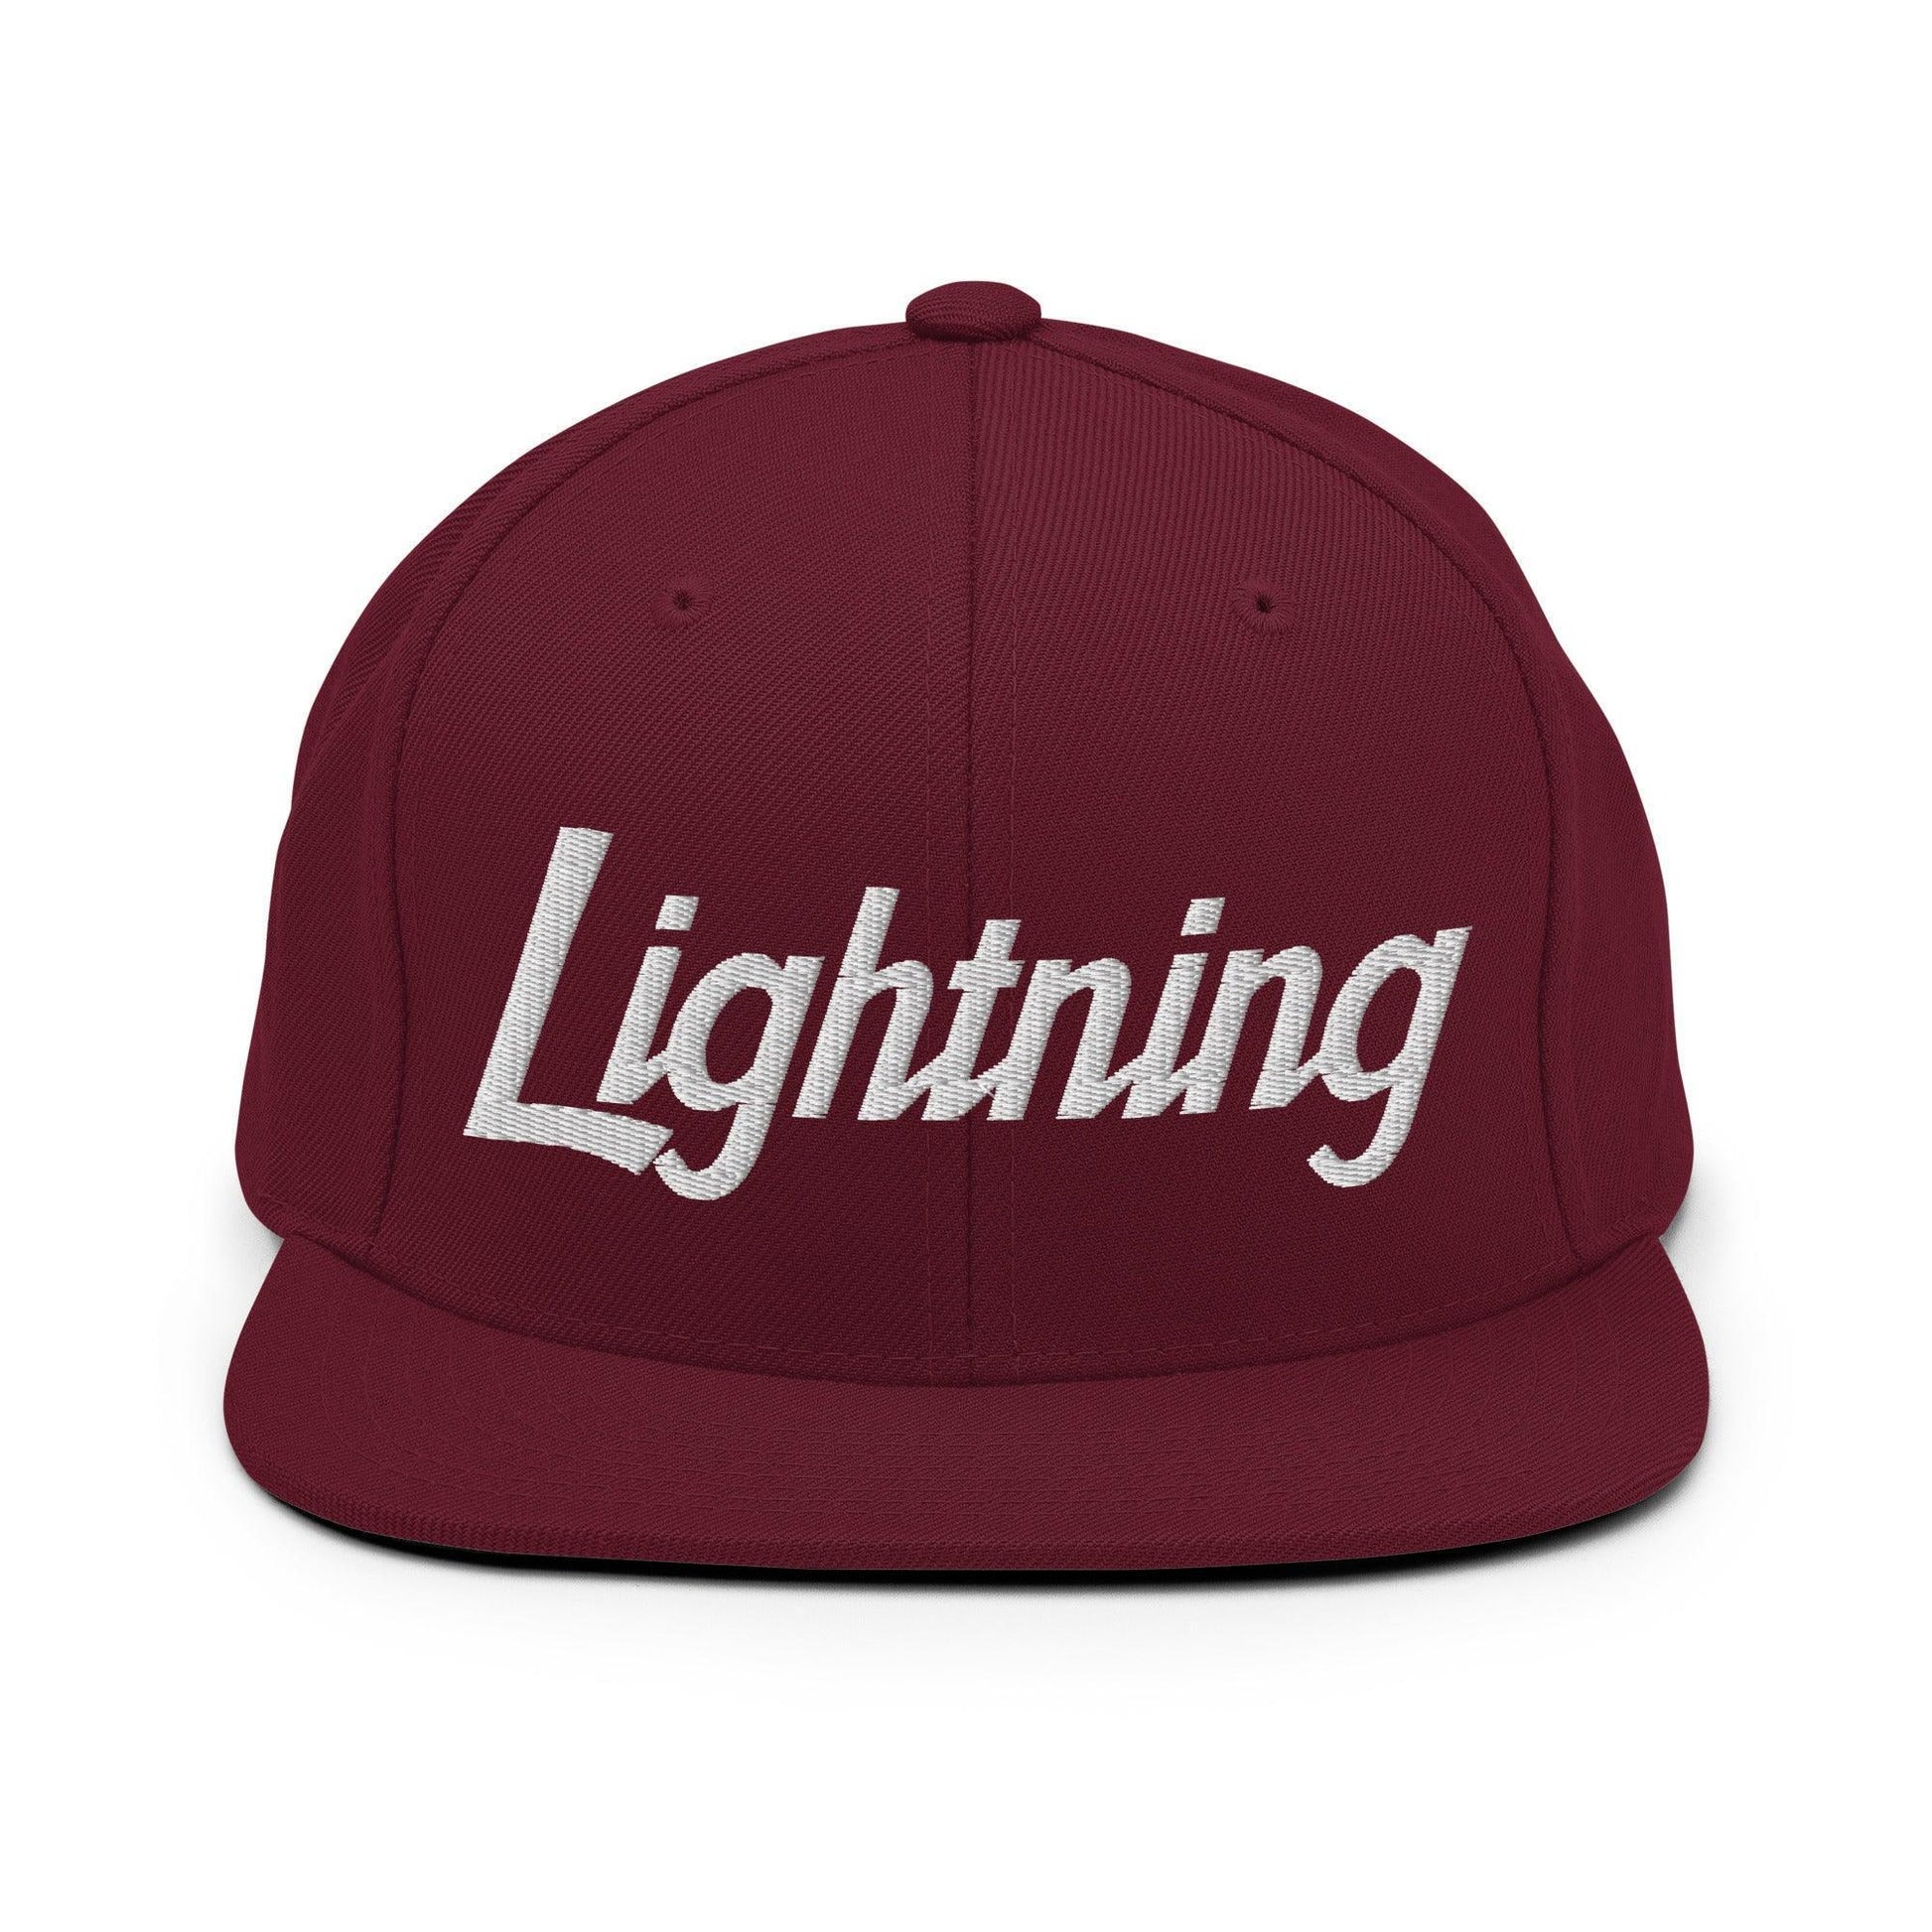 Lightning School Mascot Script Snapback Hat Maroon